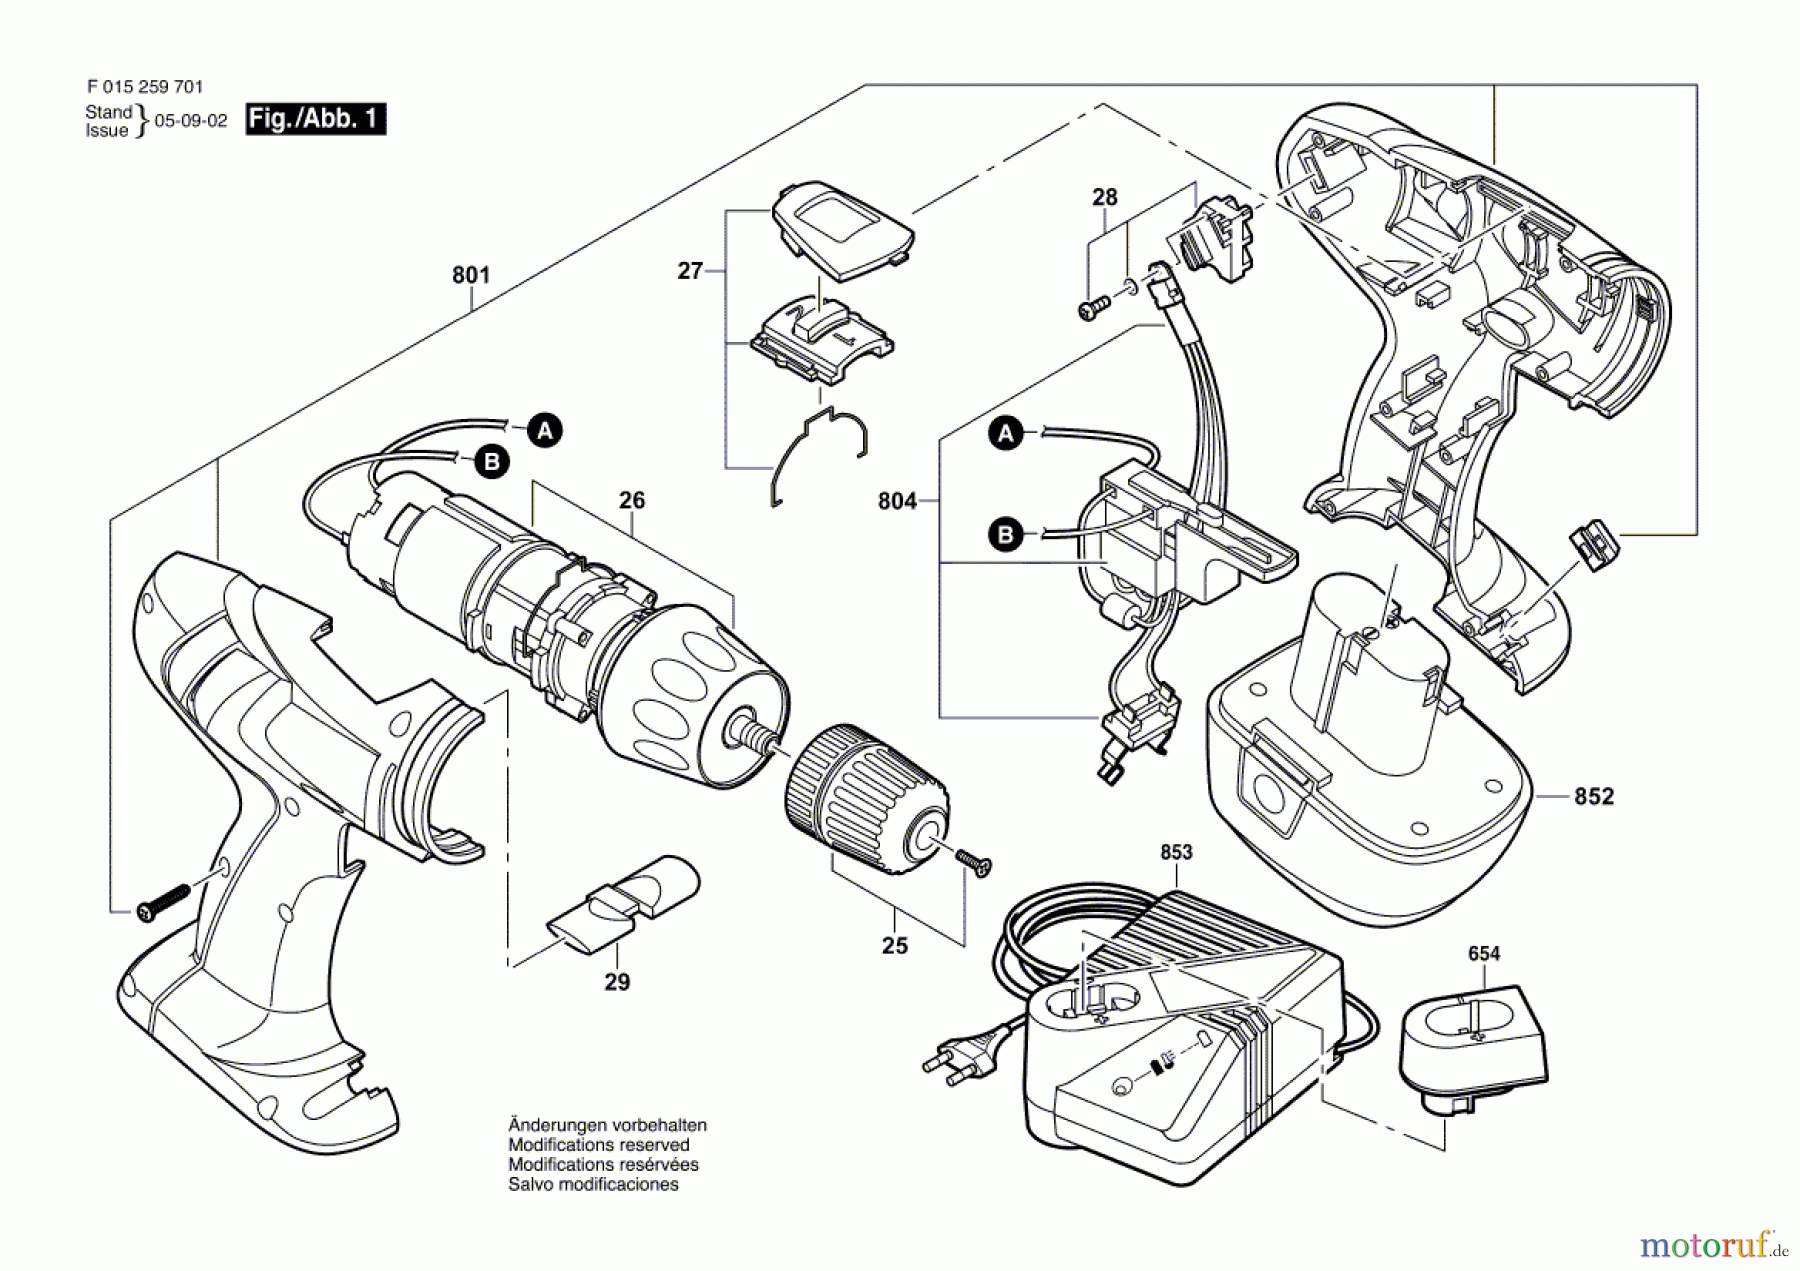  Bosch Akku Werkzeug Akku-Schlagbohrmaschine 2597 Seite 1